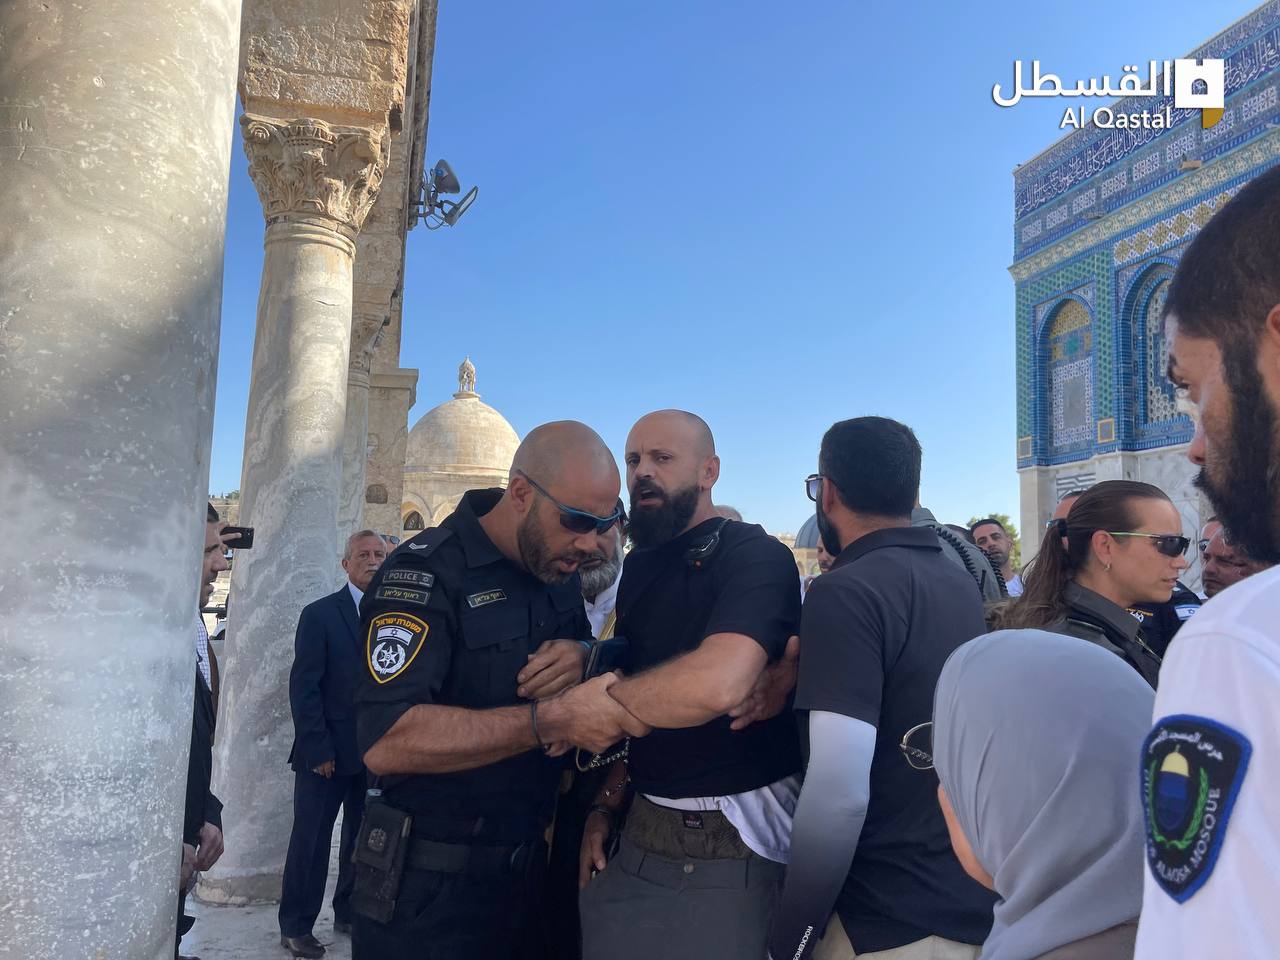 قوات الاحتلال تعتدي على أحد موظفي الأوقاف في المسجد الأقصى